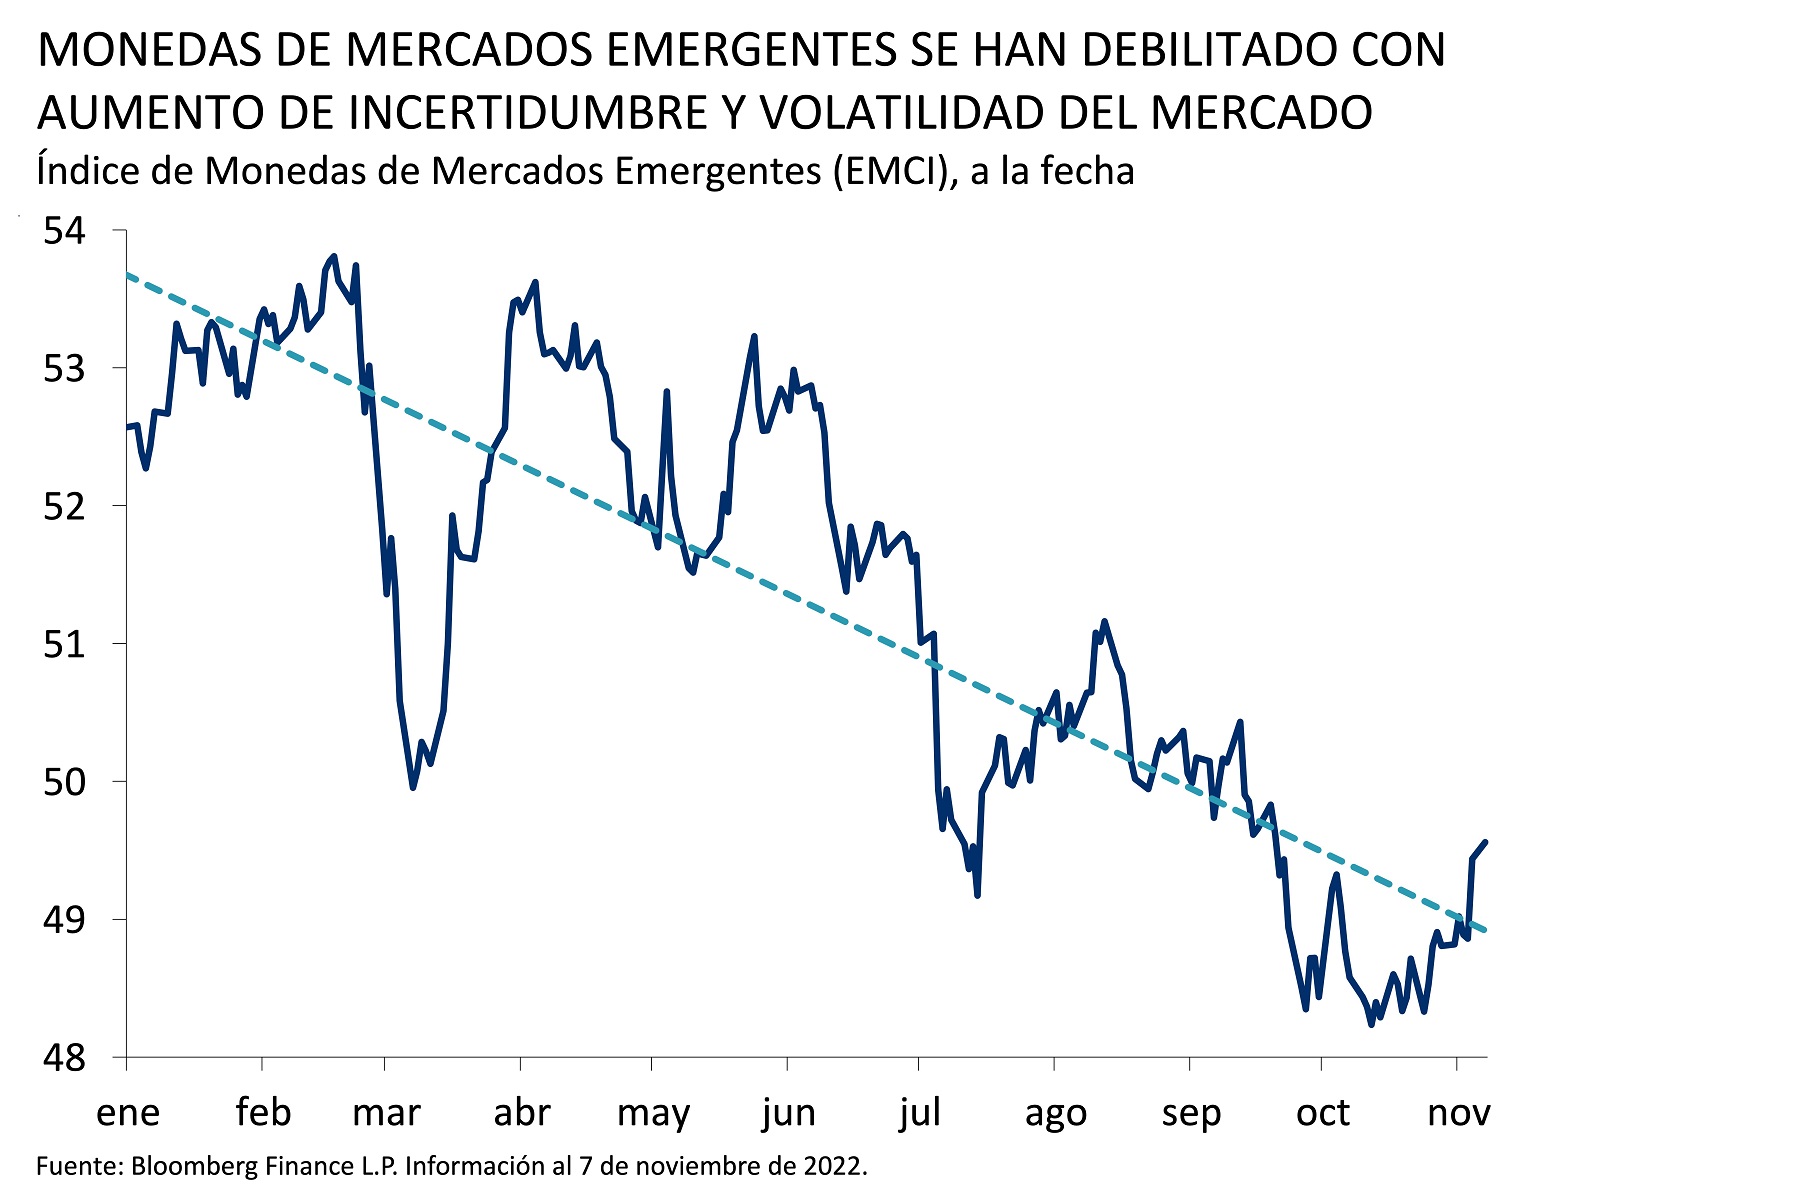 Este gráfico muestra el Índice de Monedas de Mercados Emergentes (EMCI por sus siglas en inglés) hasta la fecha, así como su tendencia.